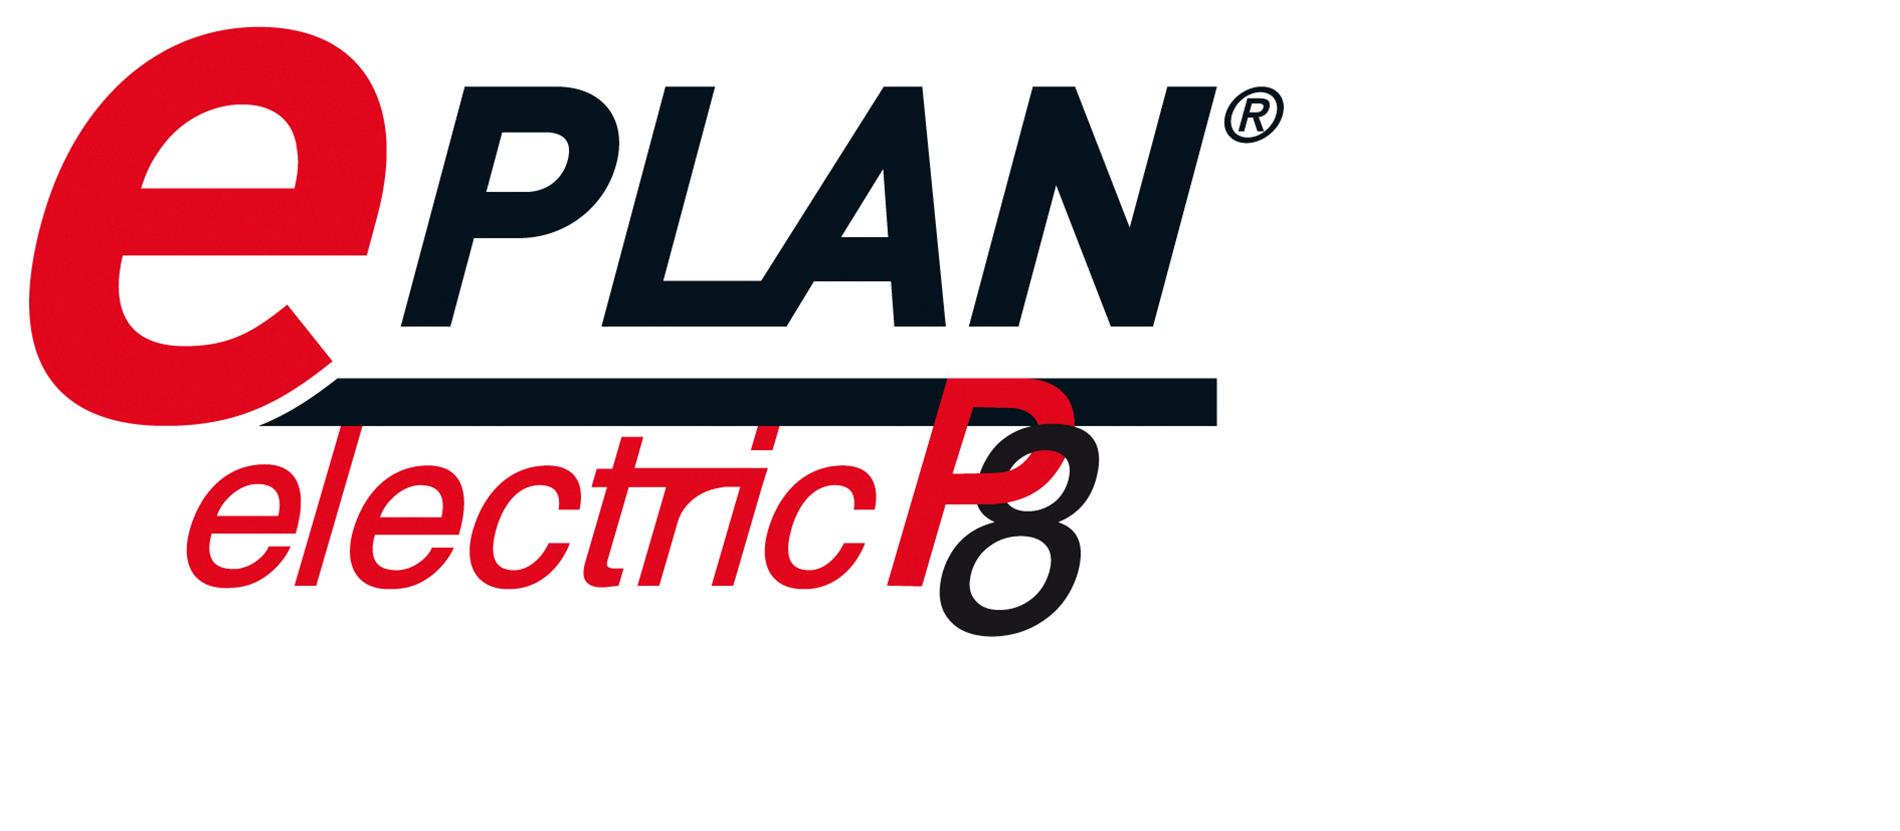 2012 08 31 Logo EPLAN electricP8 RGB